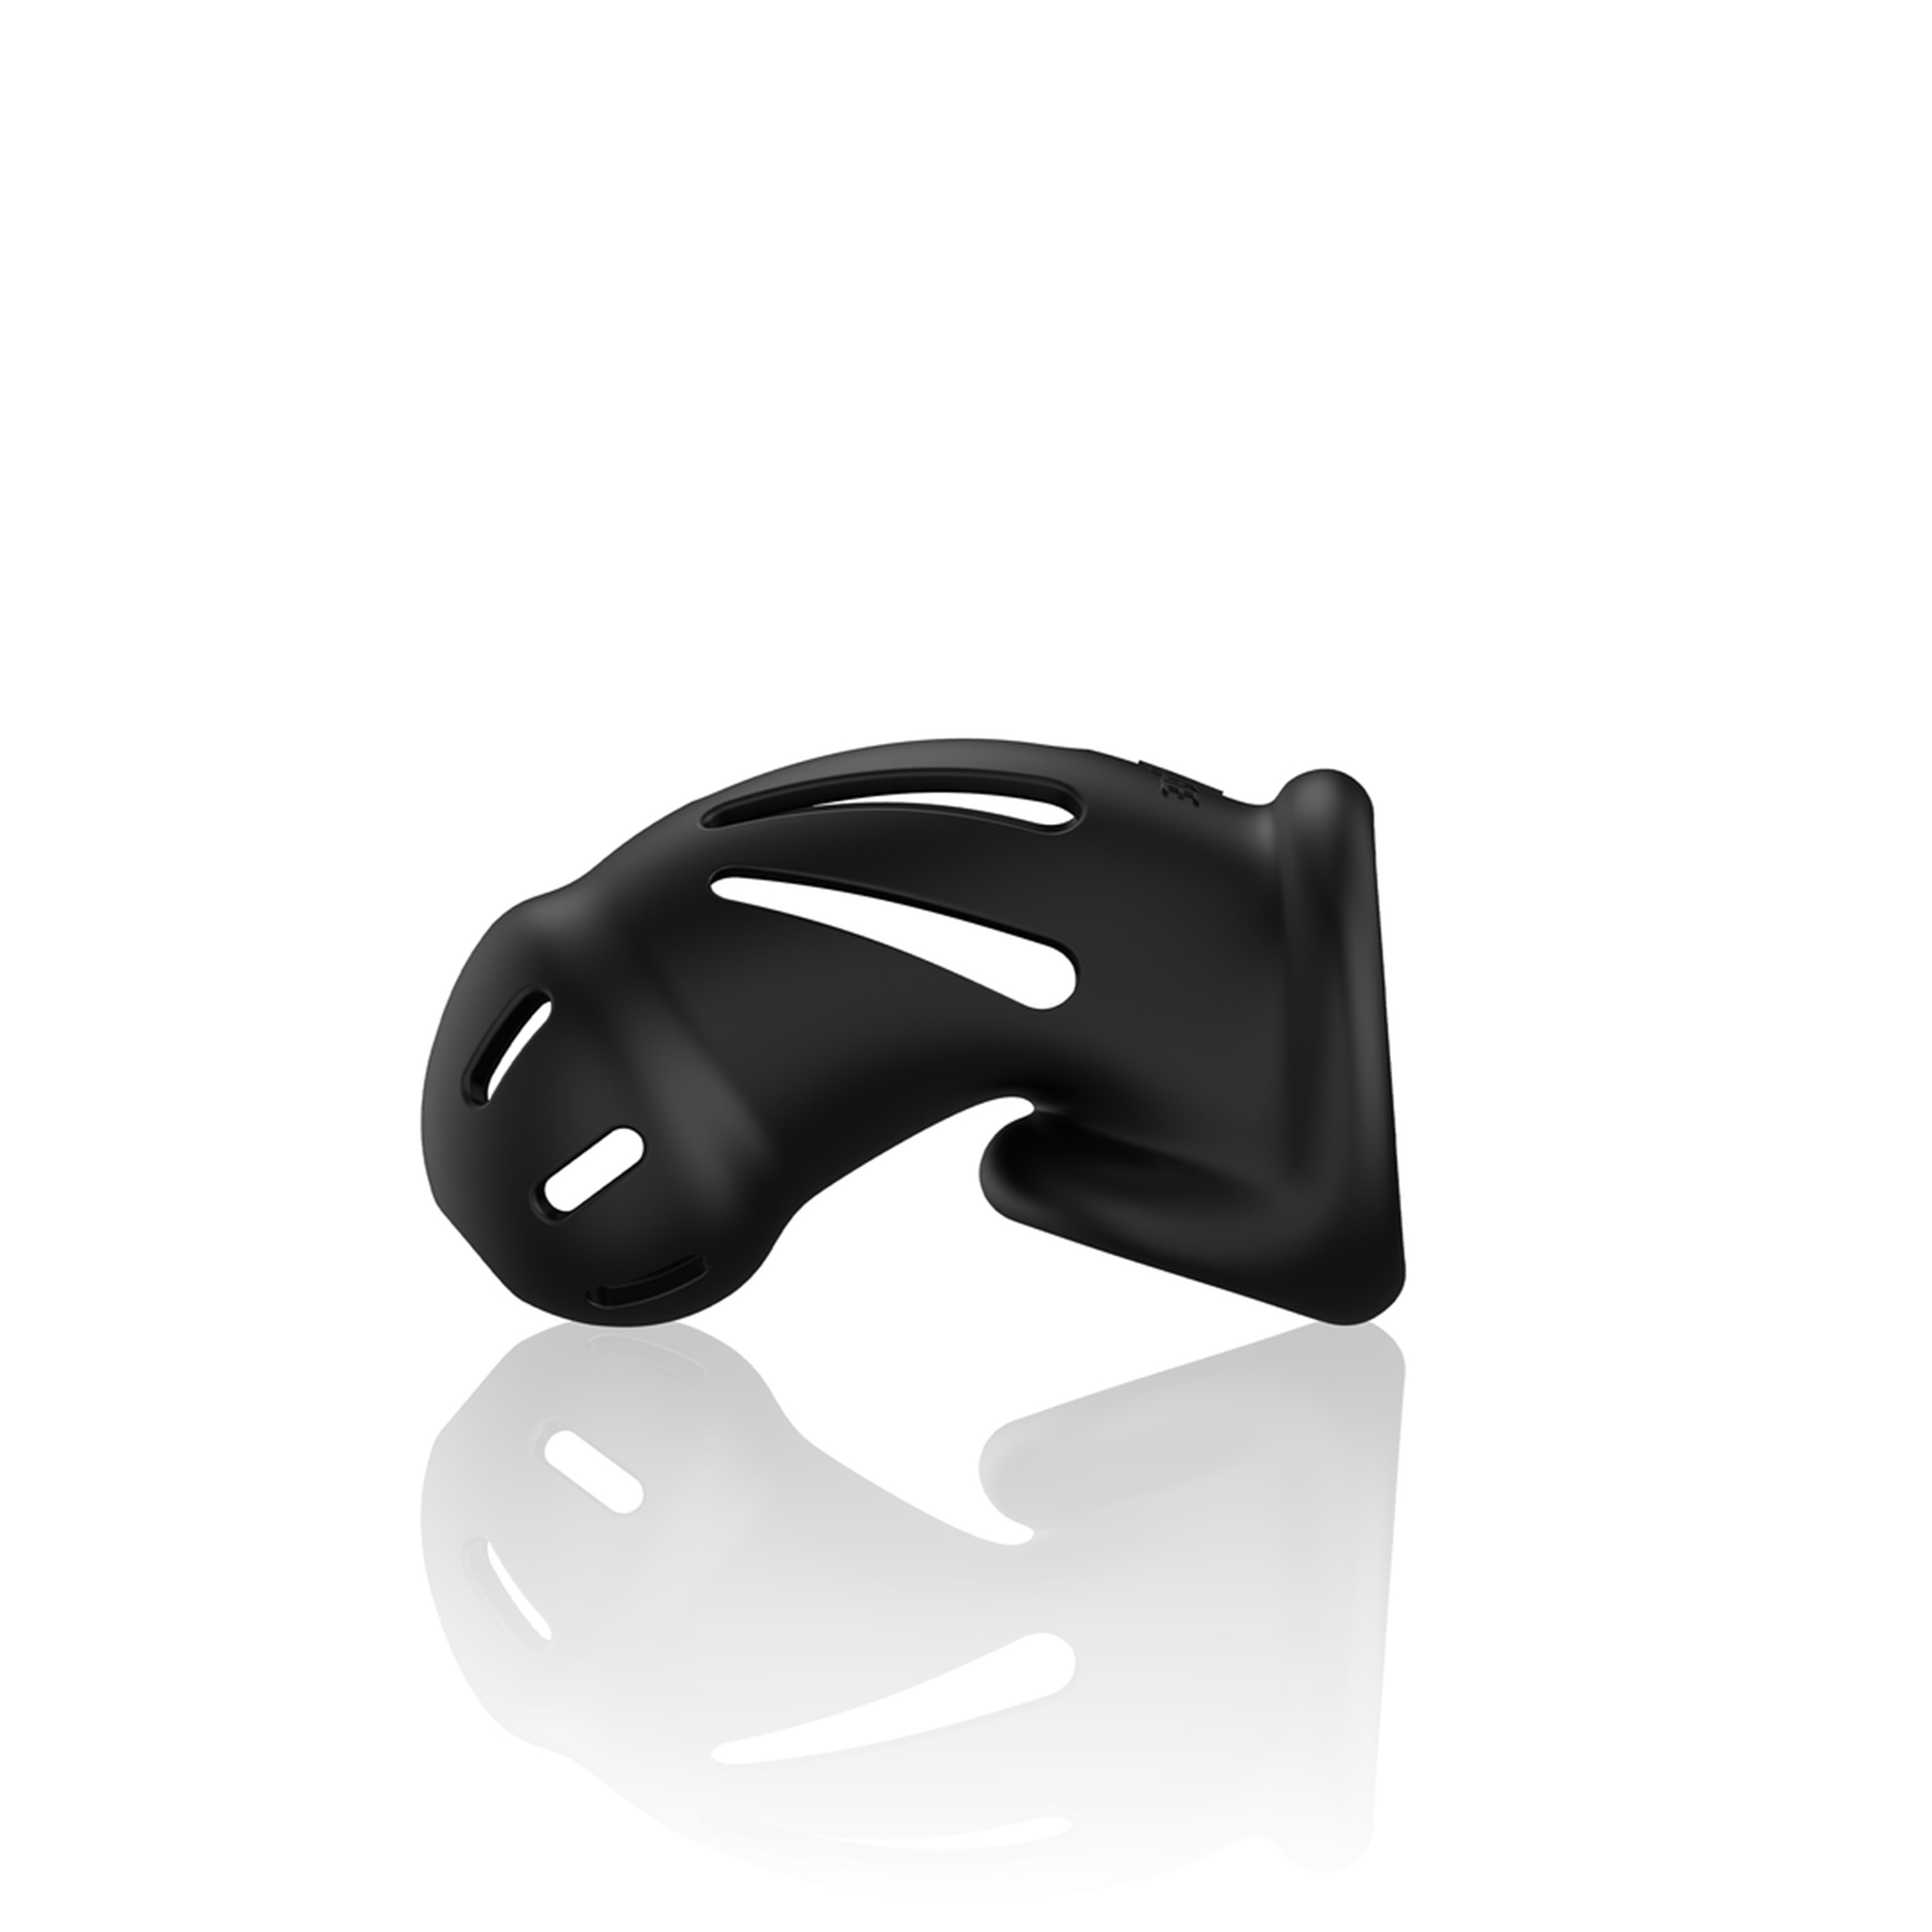 Brug Model 27 Ultra Soft Silicone Chastity Cage Black til en forbedret oplevelse